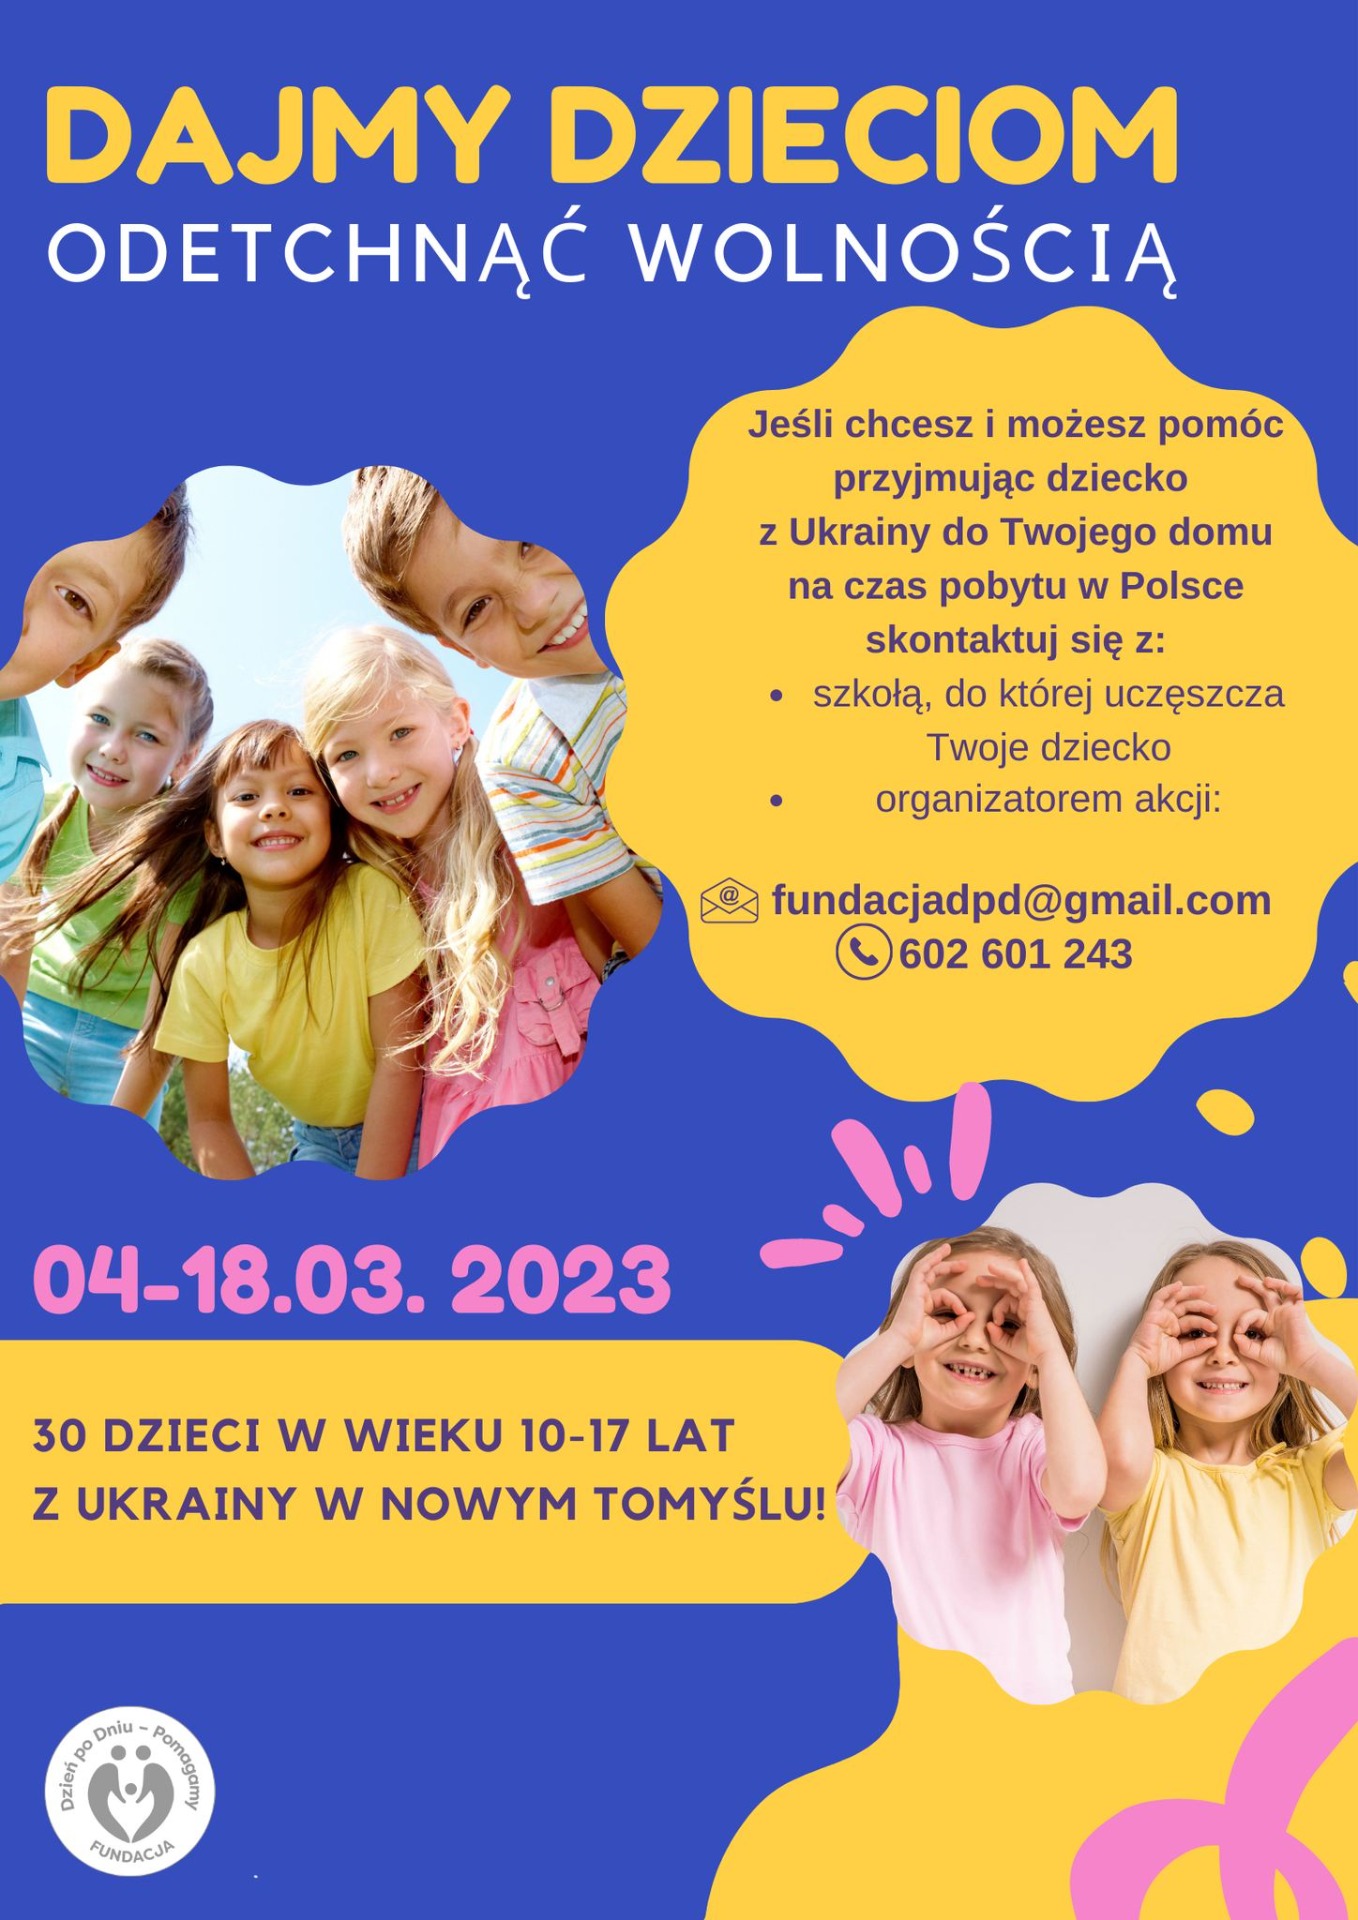 Dajmy ukraińskim dzieciom odetchnąć wolnością! - Obrazek 1